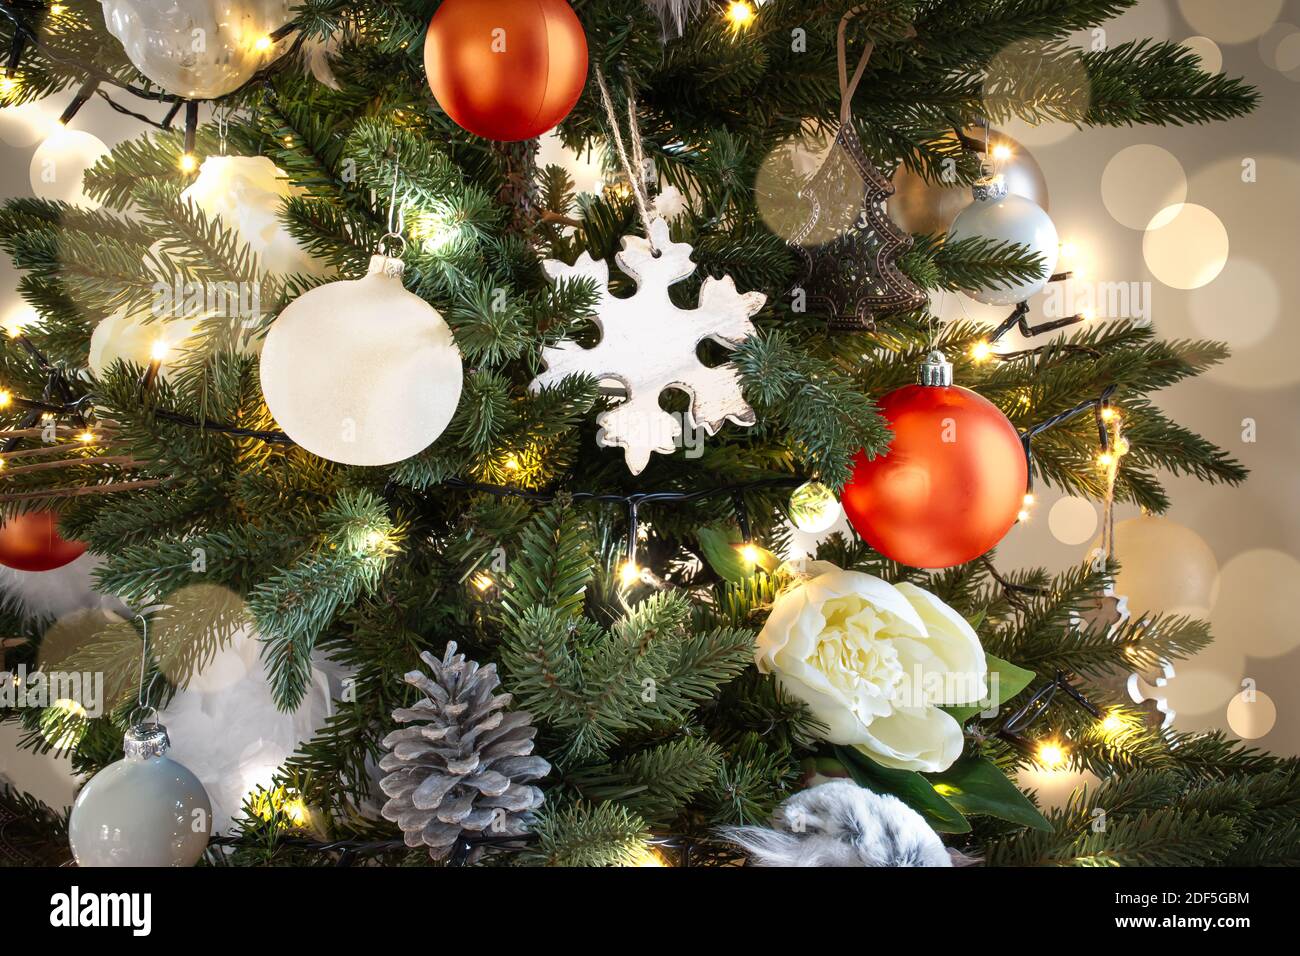 Albero di Natale illuminato con decorazioni natalizie bianche e arancioni e luce svasata. Foto Stock